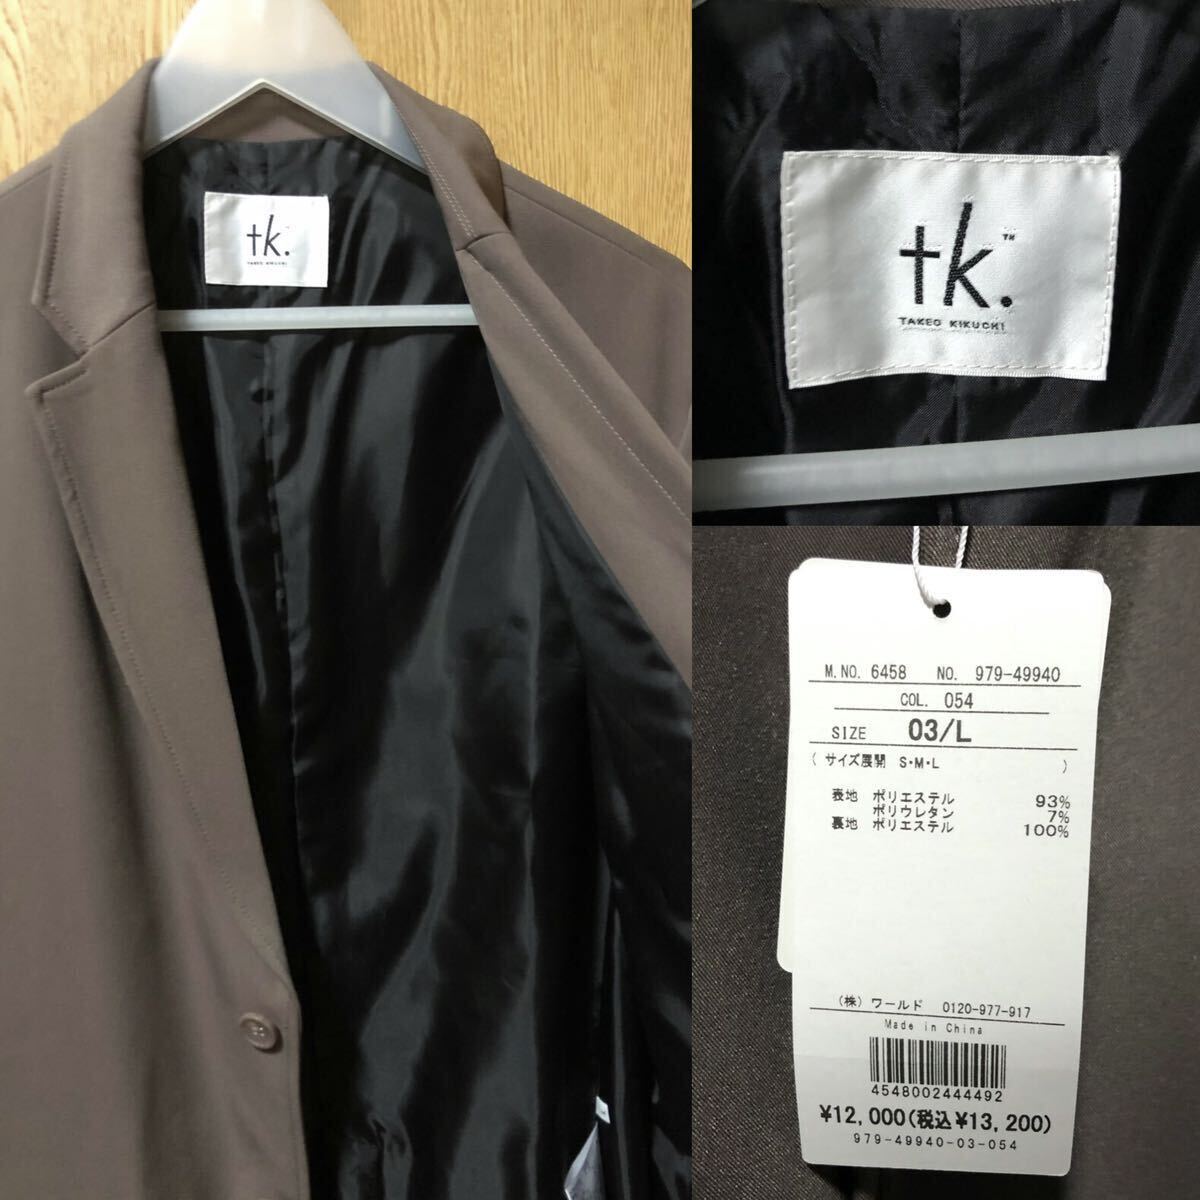  новый товар tk.TAKEO KIKUCHI [WEB ограничение ]WEARISTA сотрудничество выставить костюм L светло-коричневый бесплатная доставка 